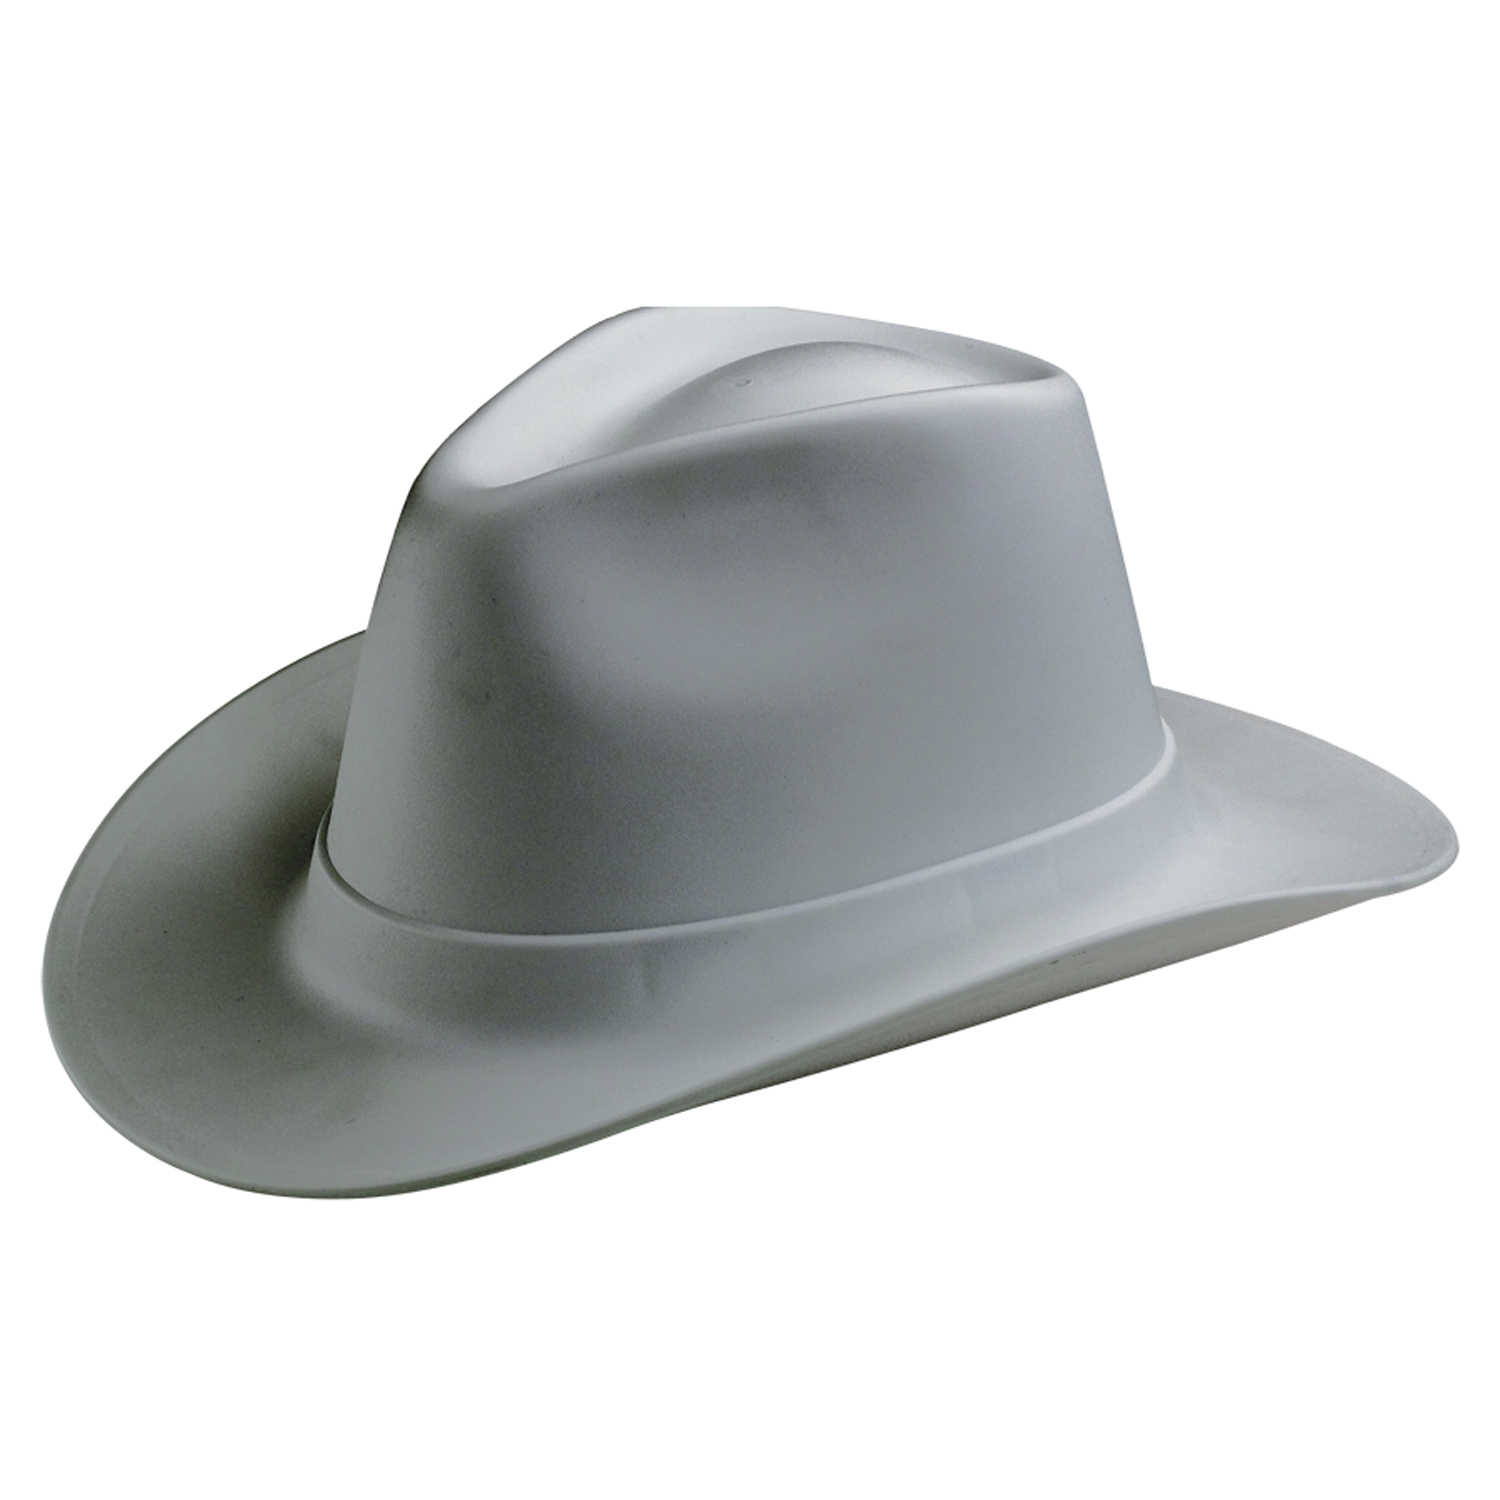 Каска в форме шляпы. Vulcan vcb200-00 Western hard hat, Type 1, class e, Ratchet (6-point), белый. Vulcan Cowboy Style hard hat White. Vulcan каска строительная. Каска шляпа.